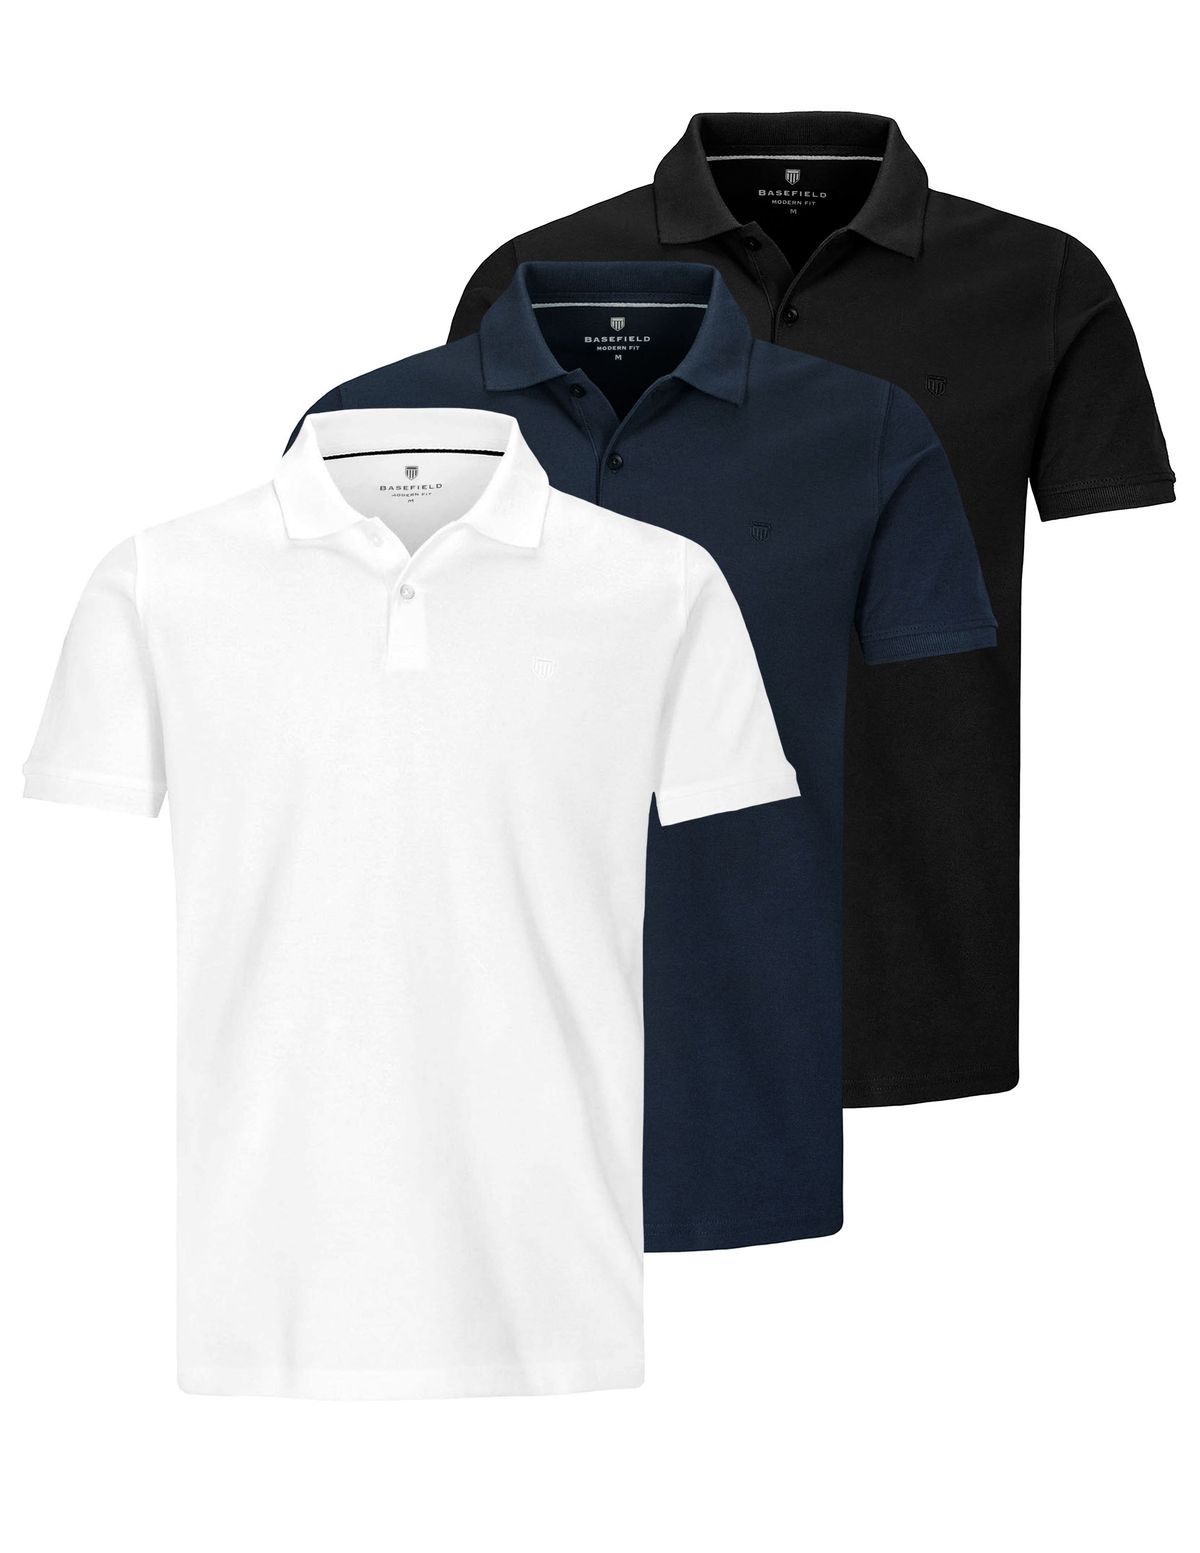 3er-Pack Poloshirt mit Labelstickerei - Schwarz/Blau/Weiß